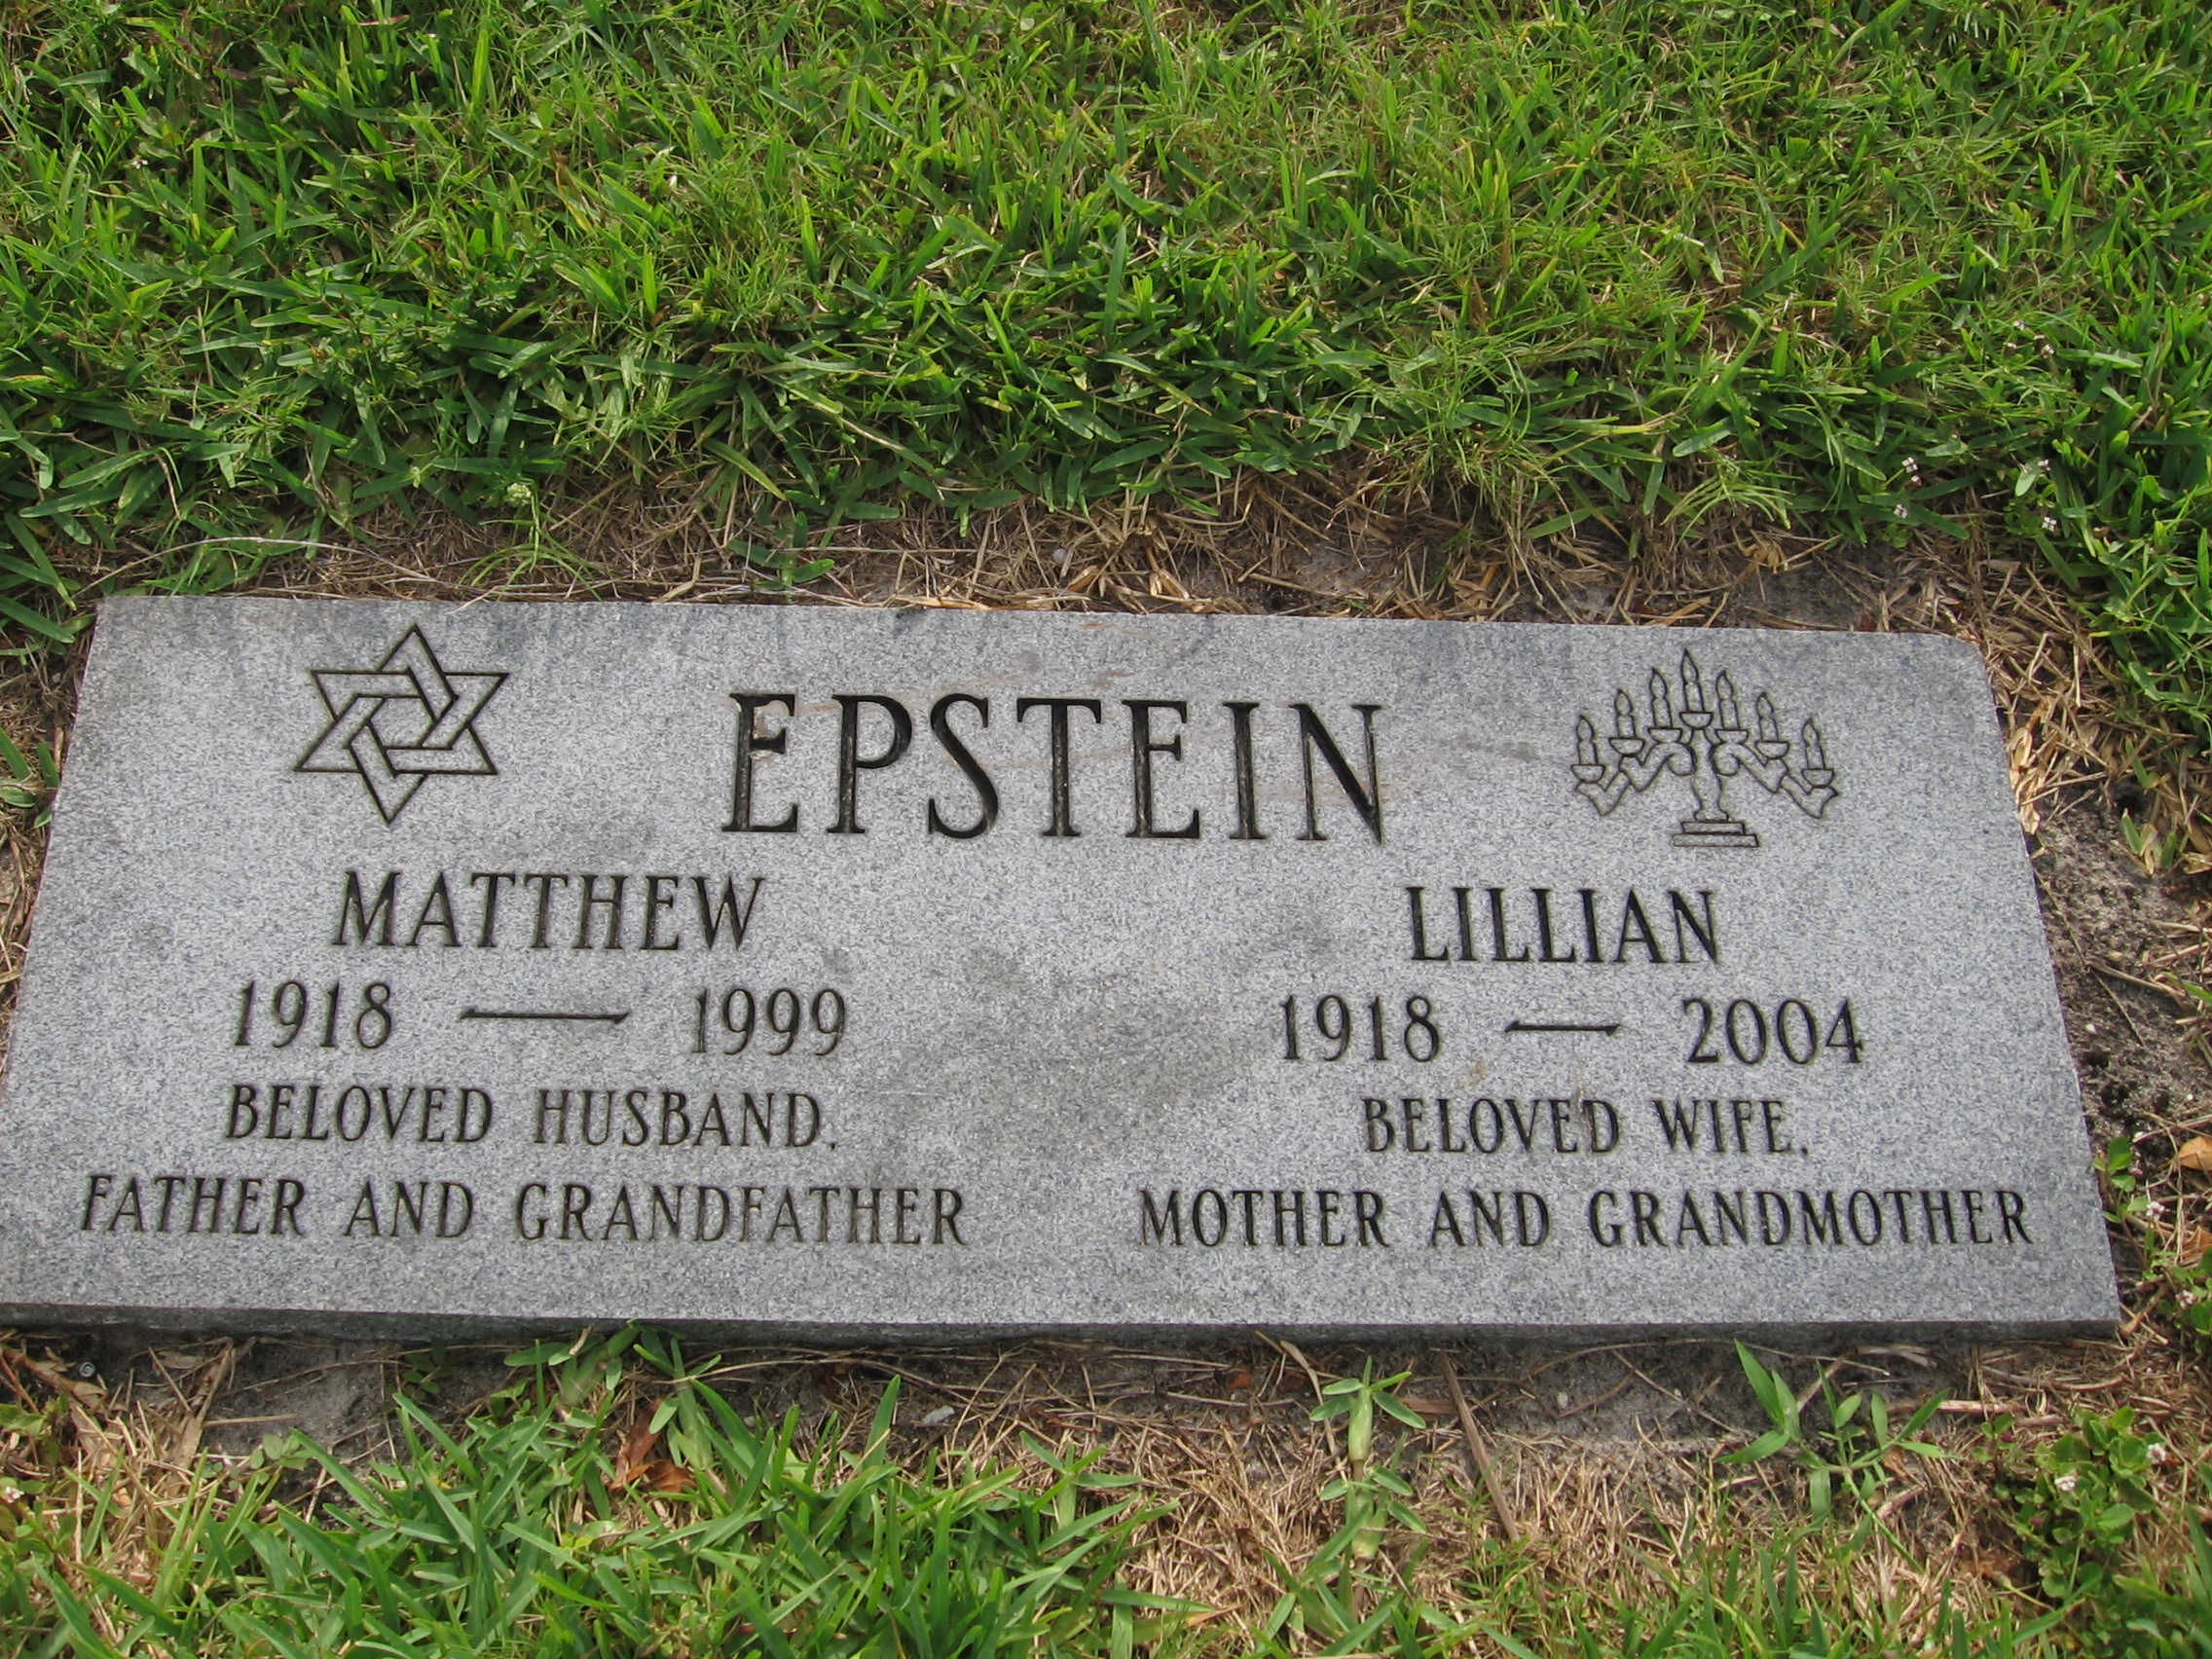 Lillian Epstein